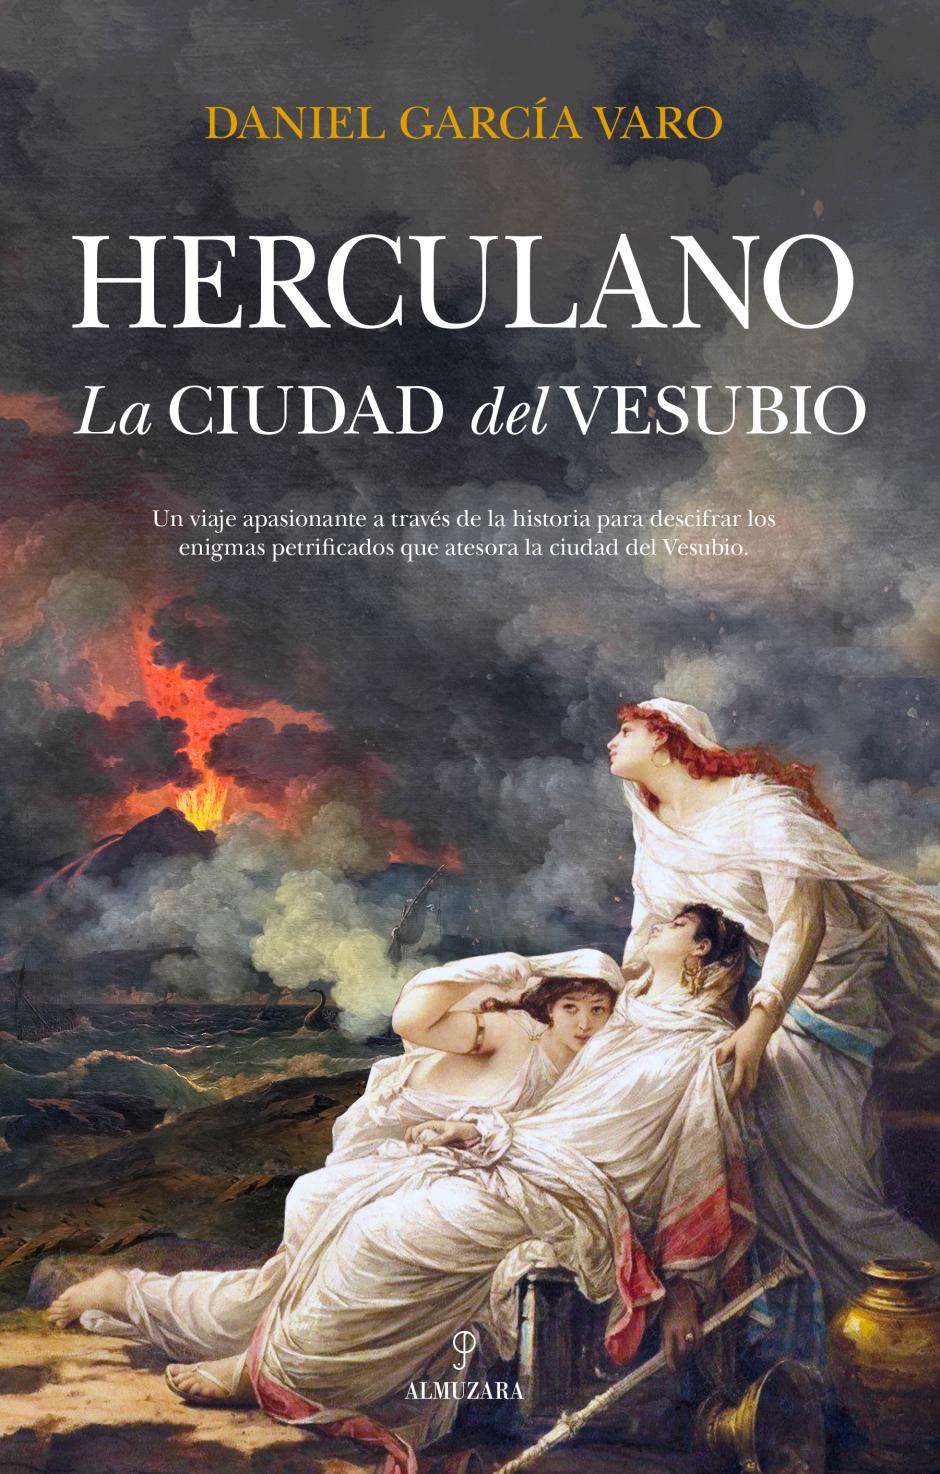 Daniel García Vara es el autor de 'Herculano, la ciudad del Vesubio' (Almuzara)